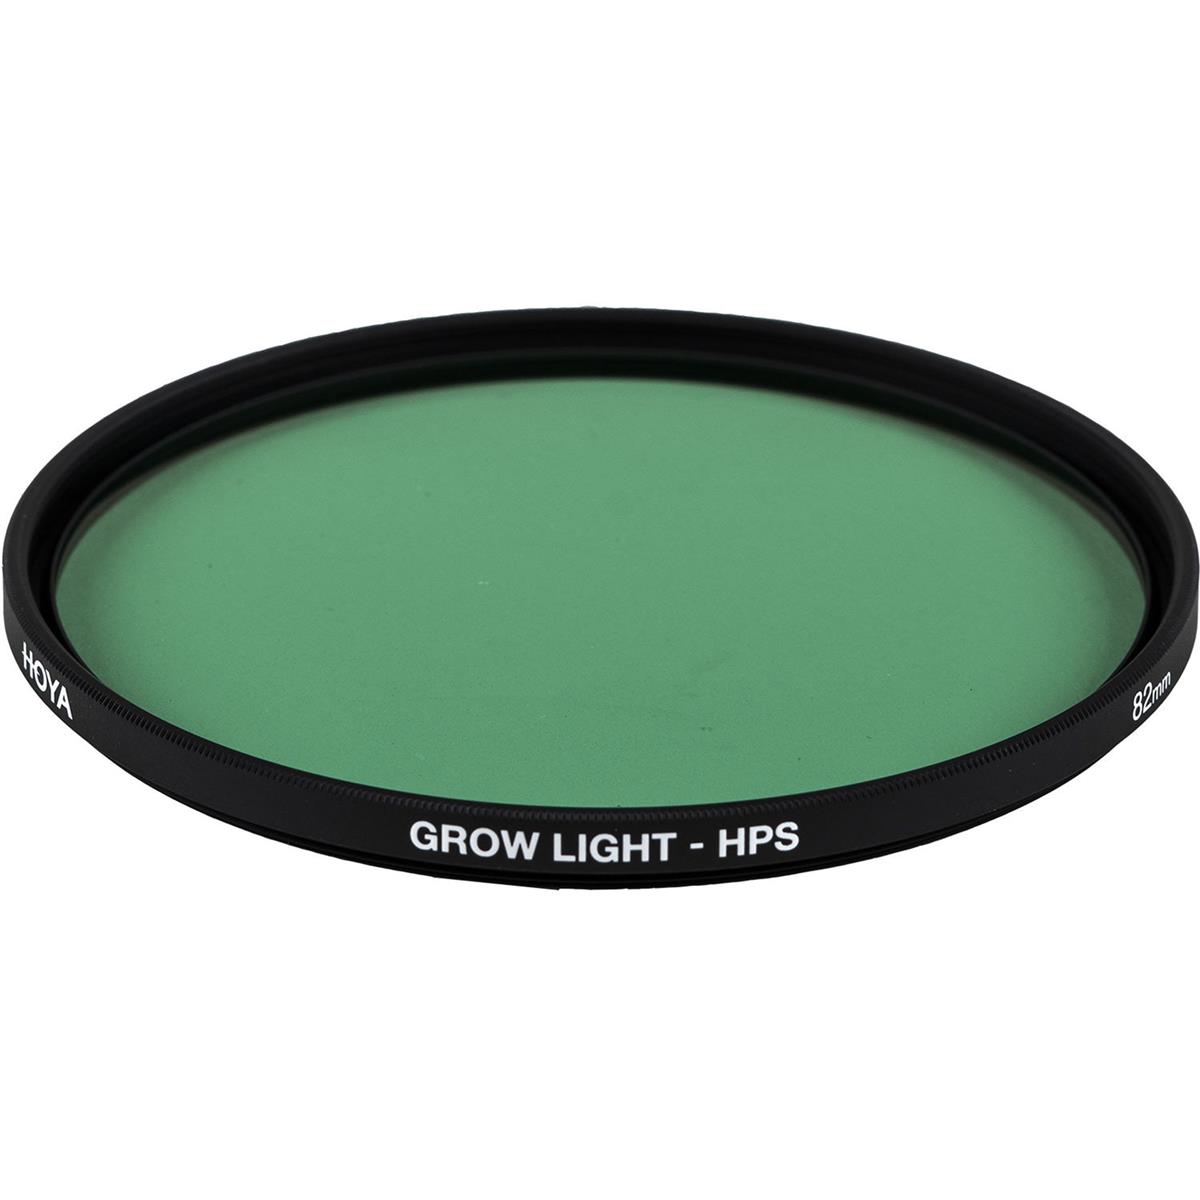 Image of Hoya 62mm Grow Light HPS Filter Kit